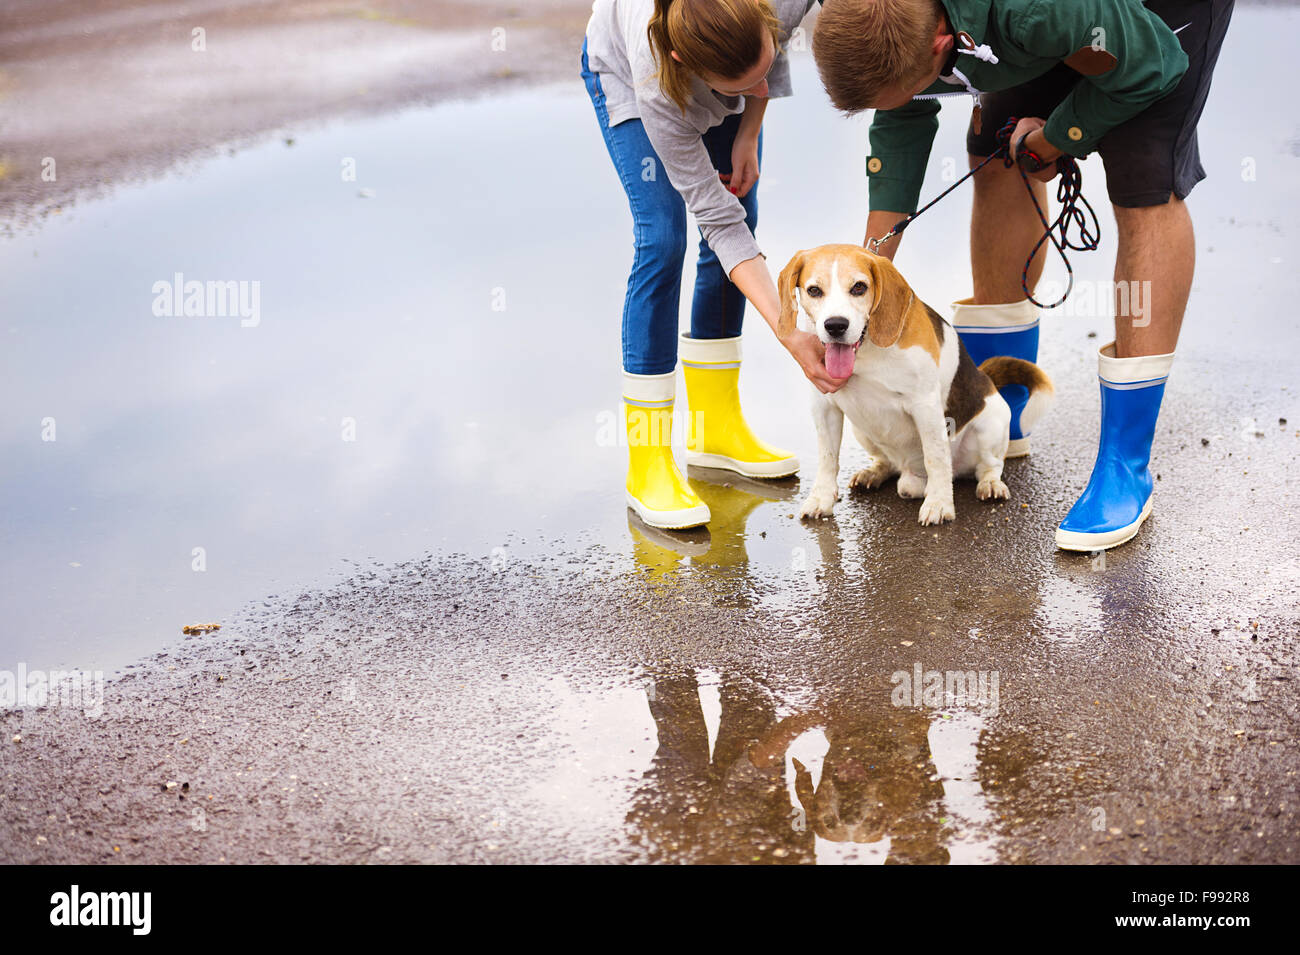 Paar spazieren Hund im Regen. Details Gummistiefel in Pfützen planschen  Stockfotografie - Alamy